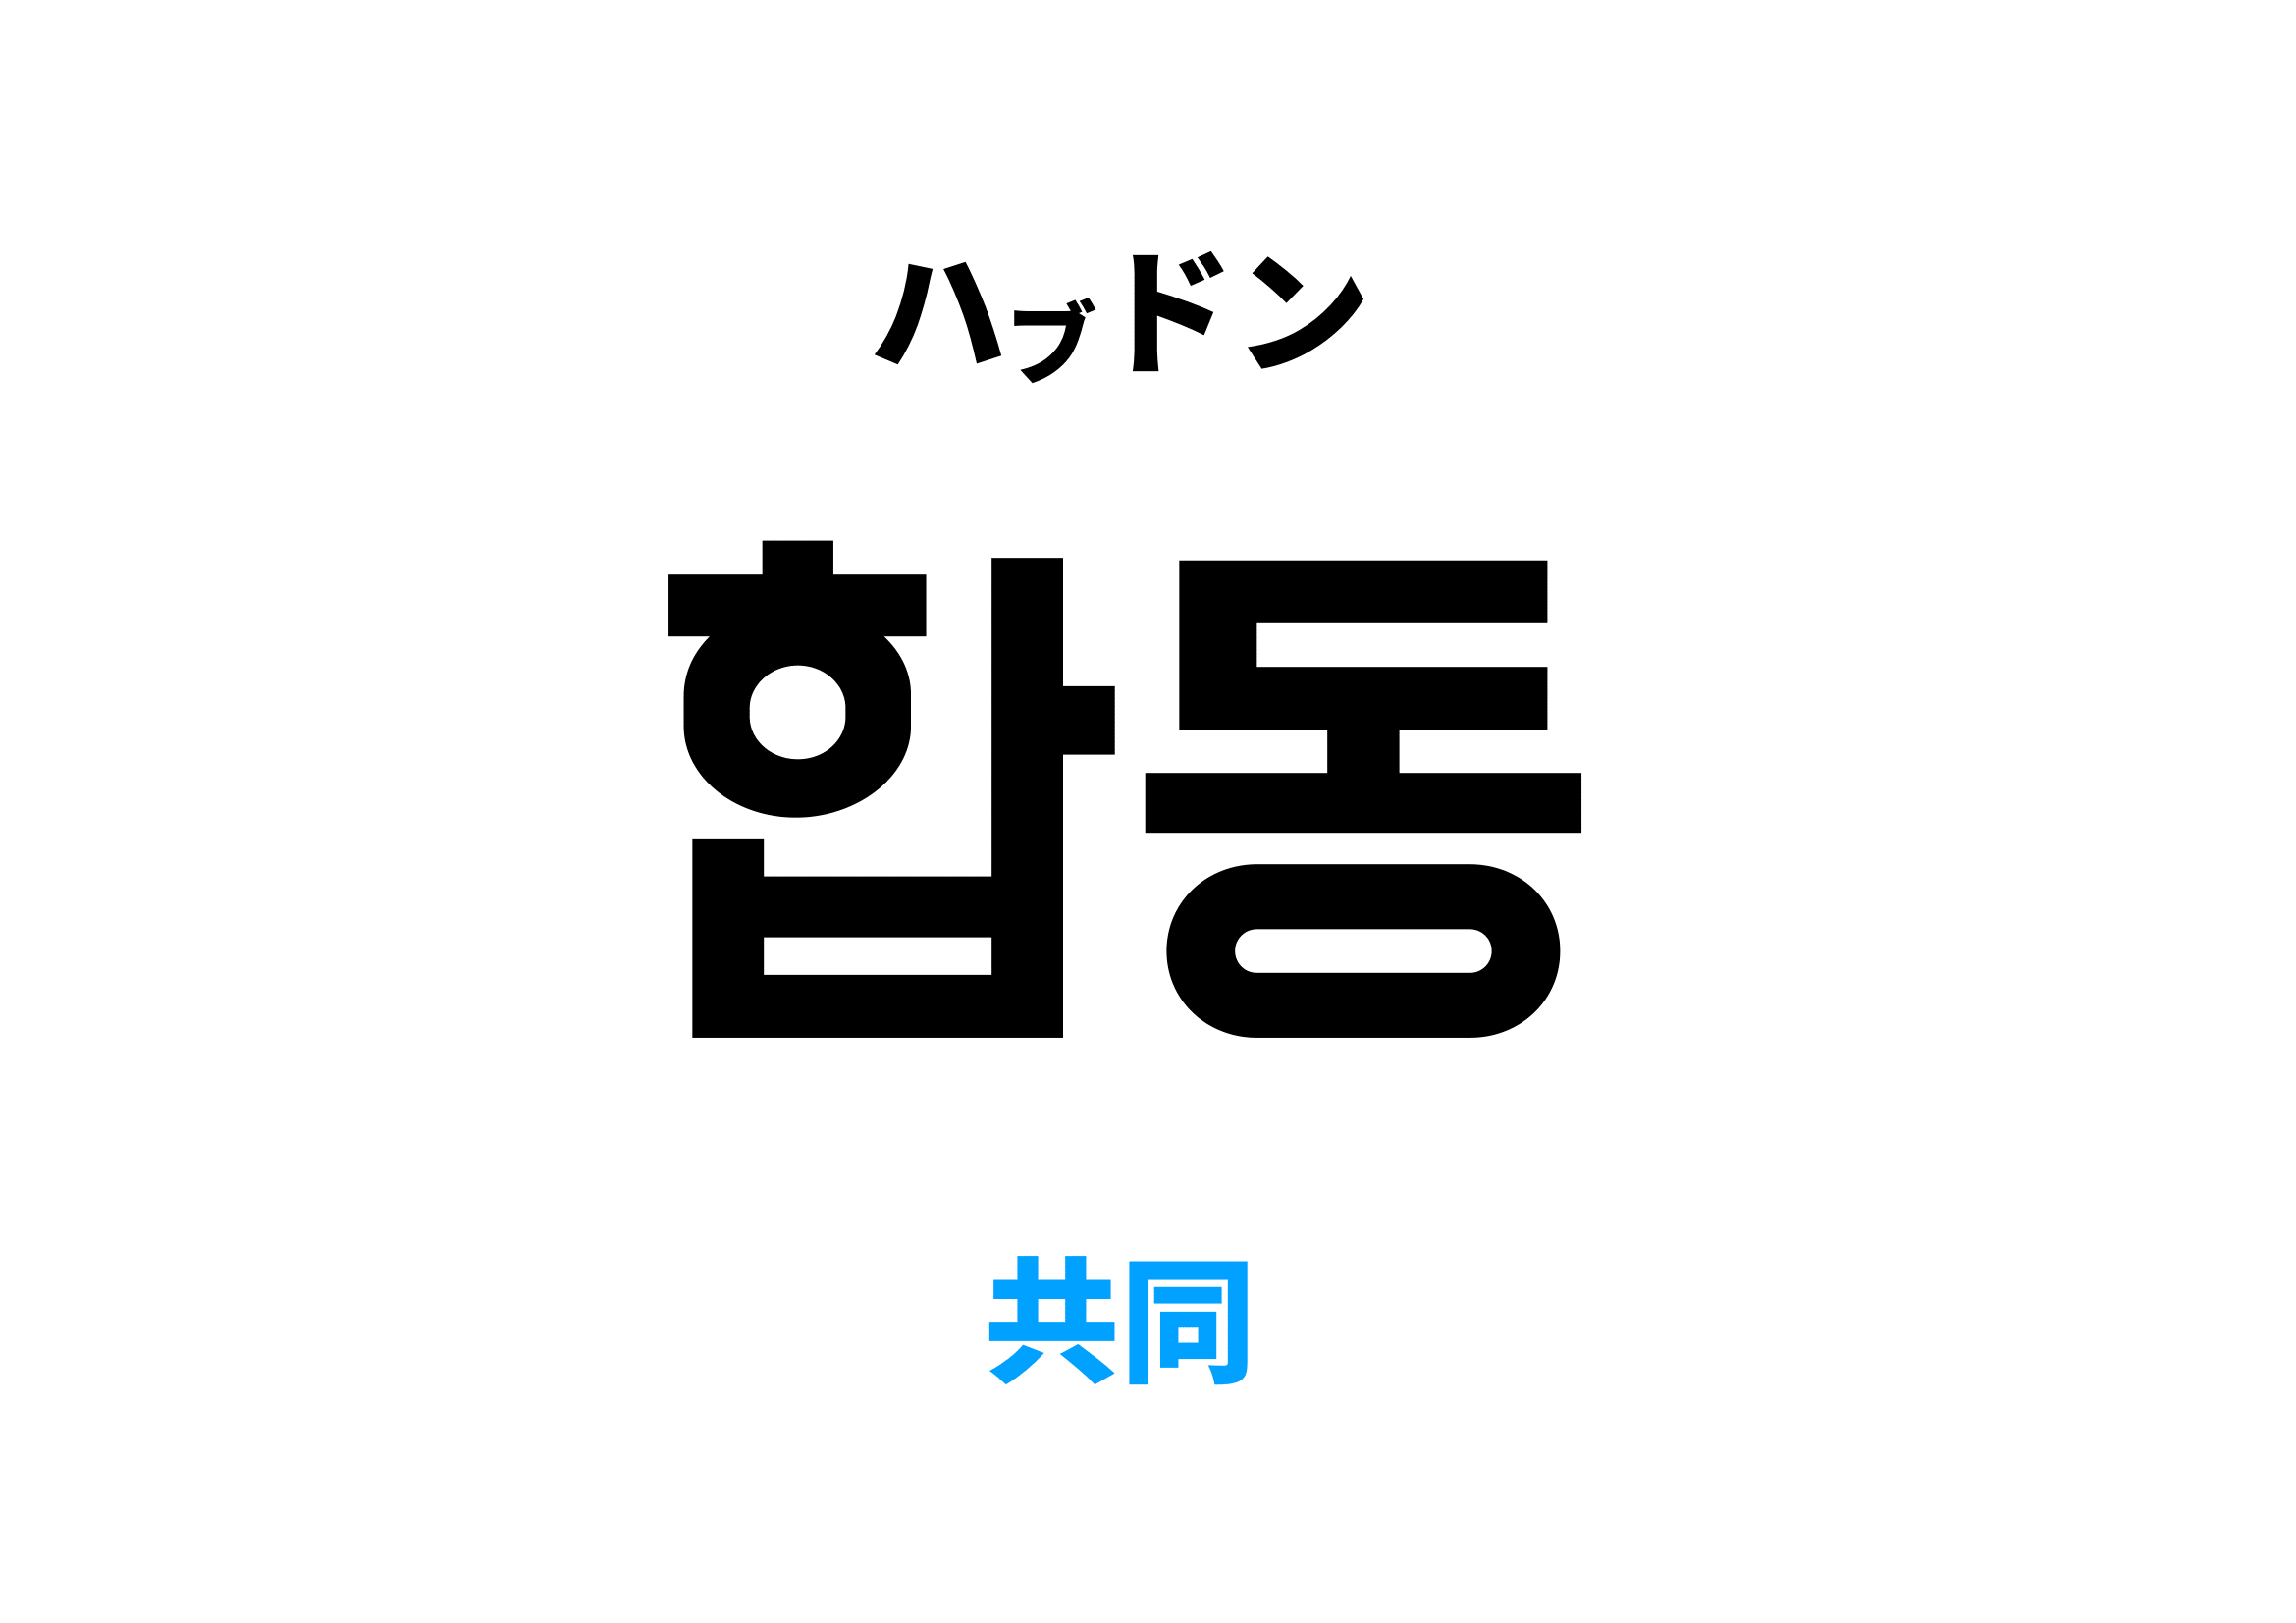 韓国語で共同 [합동]の意味と発音を学ぼう